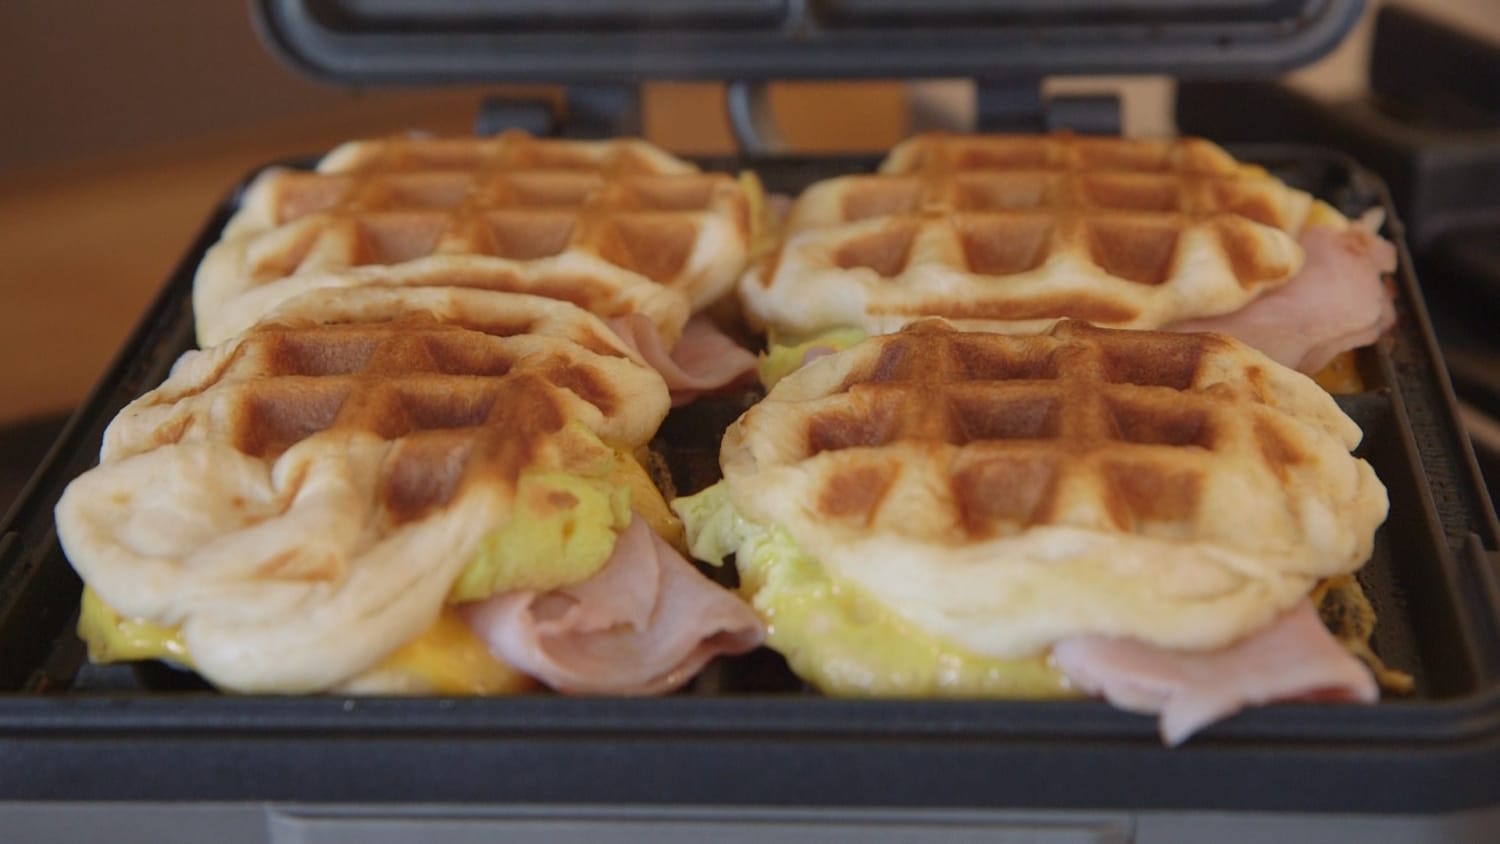 4-Ingredient Breakfast Stuffed Waffles recipe